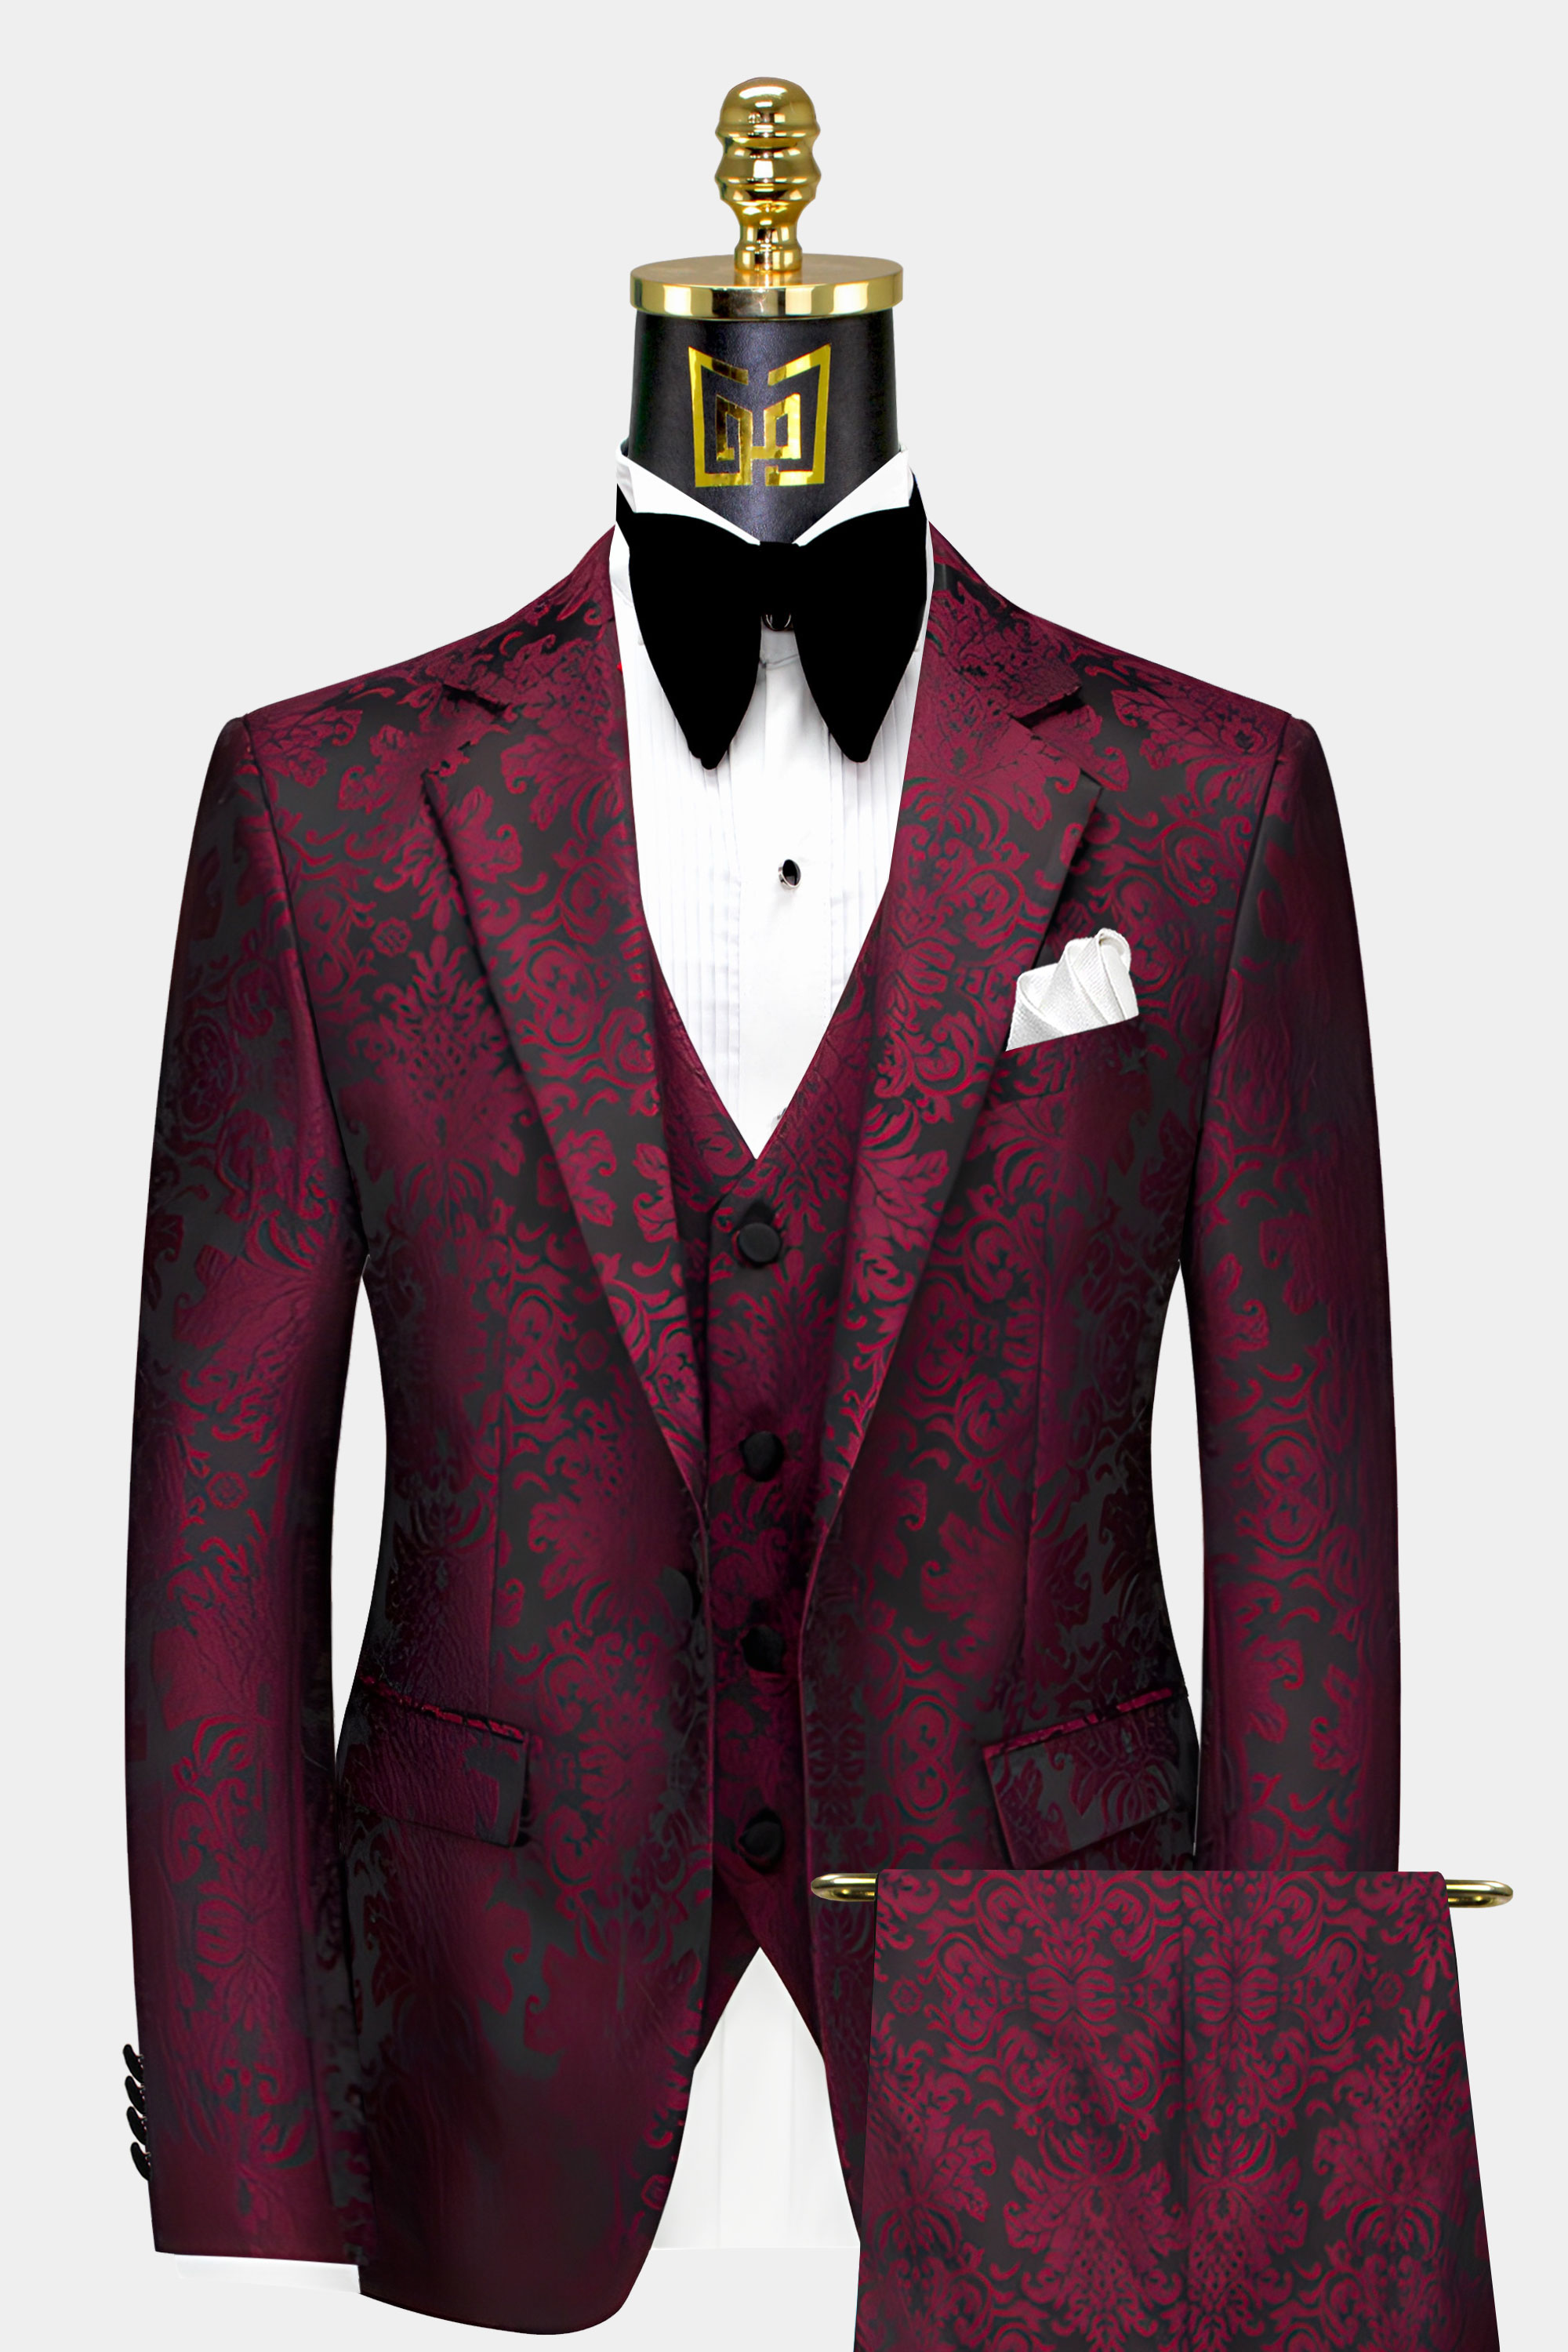 Mens-Burgundy-and-Black-Suit-Groom-Prom-Wedding-Tuxedo-For-Men-from-Gentlemansguru.com